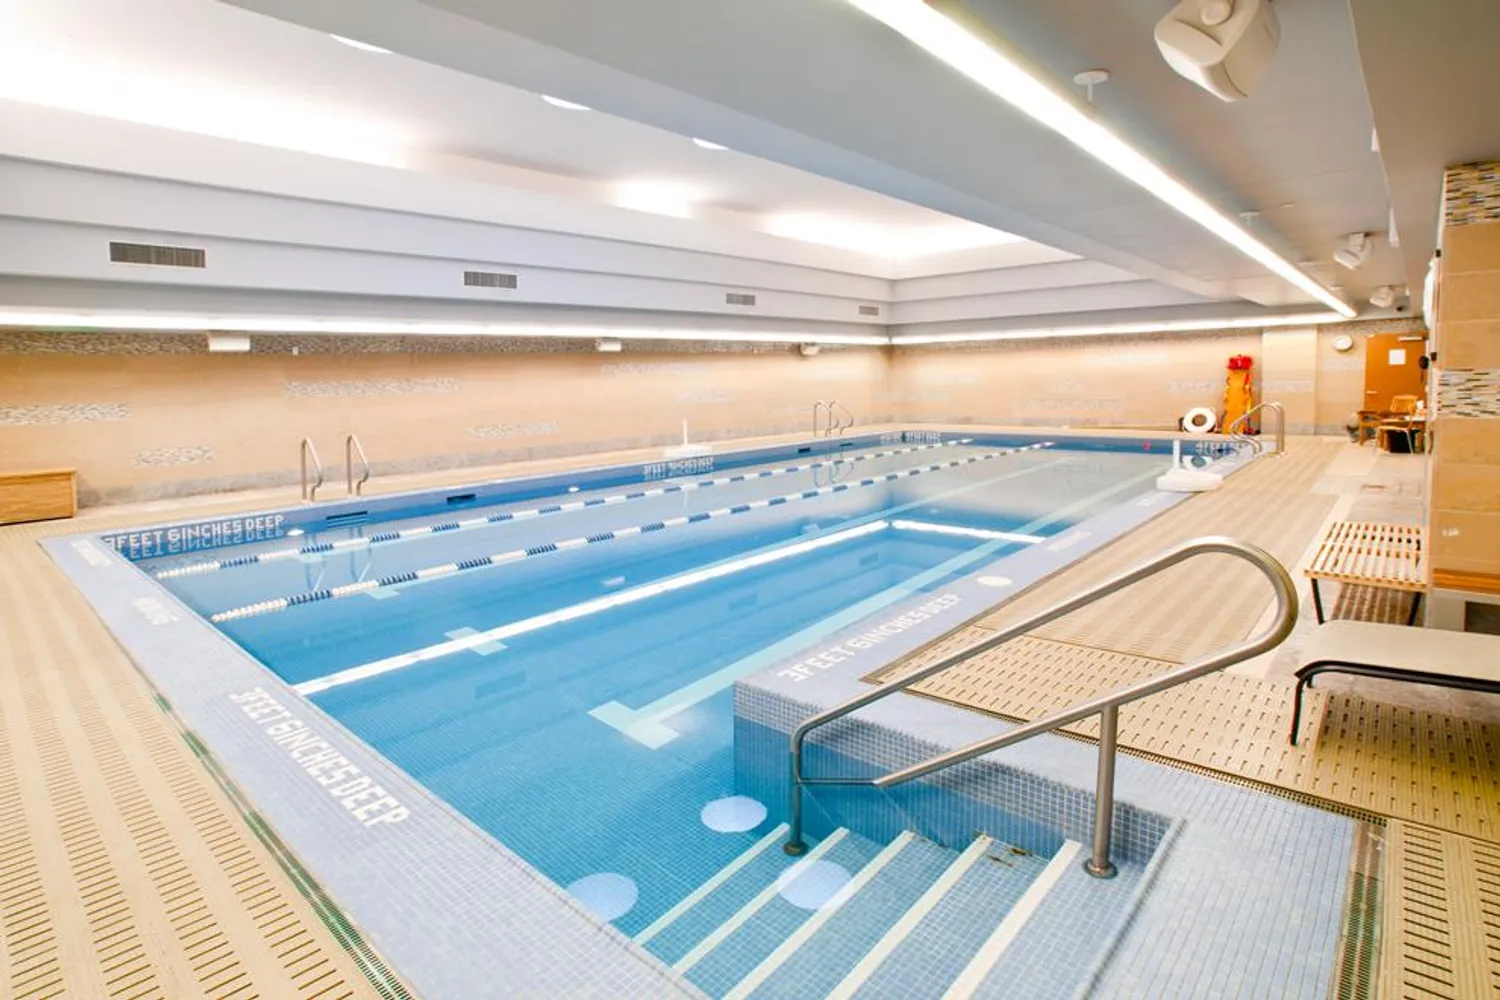 51-foot long swimming pool